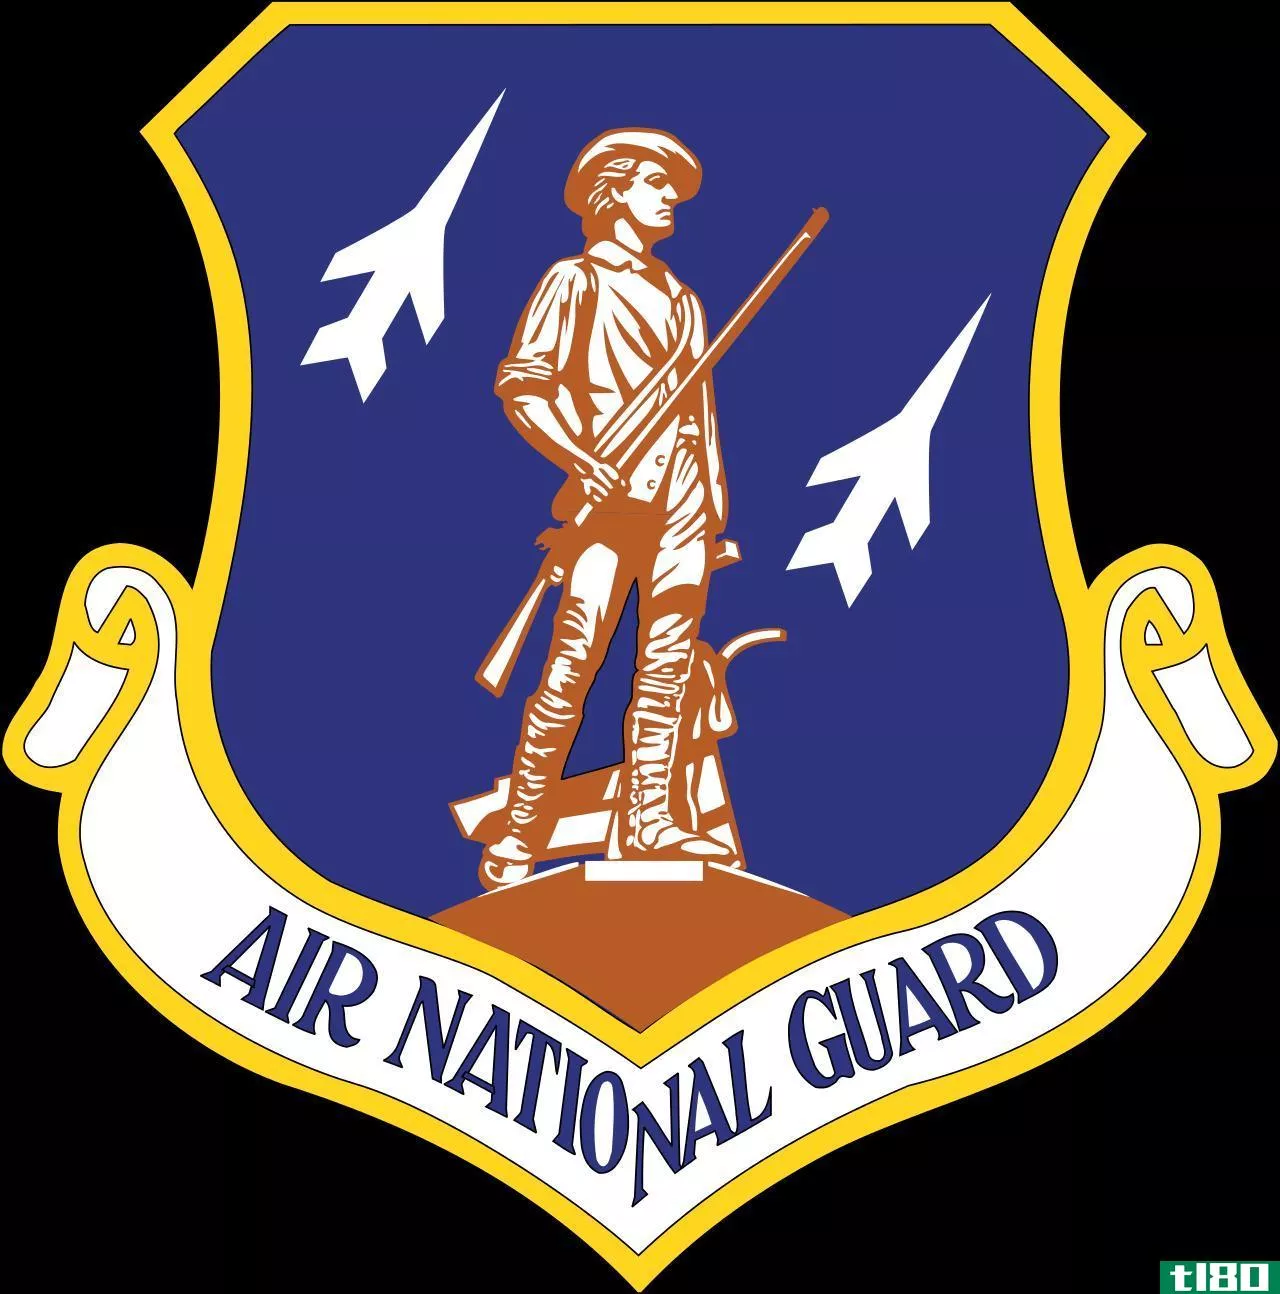 空军国民警卫队(air national guard)和空军预备役(air force reserve)的区别